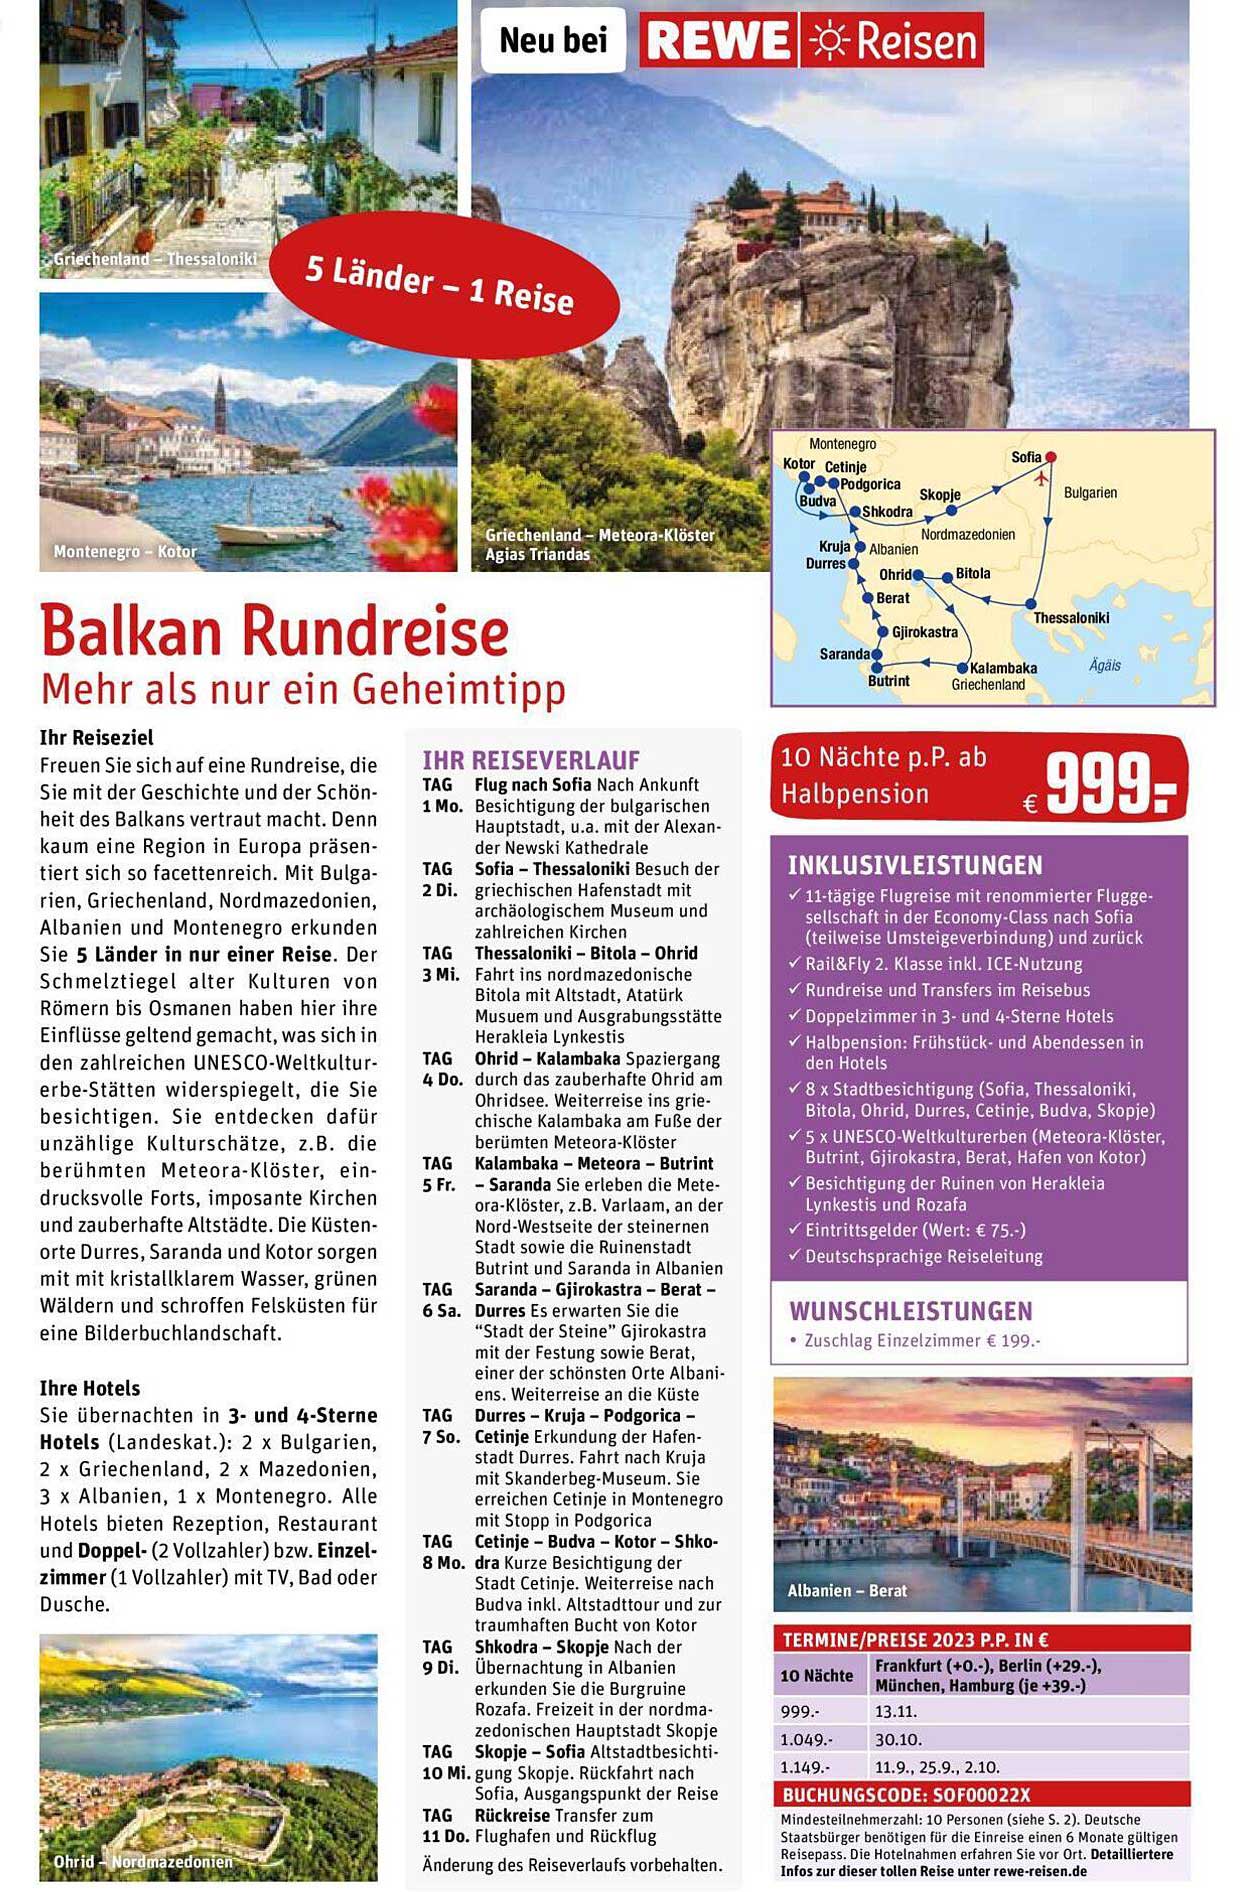 REWE Reisen Balkan Rundreise